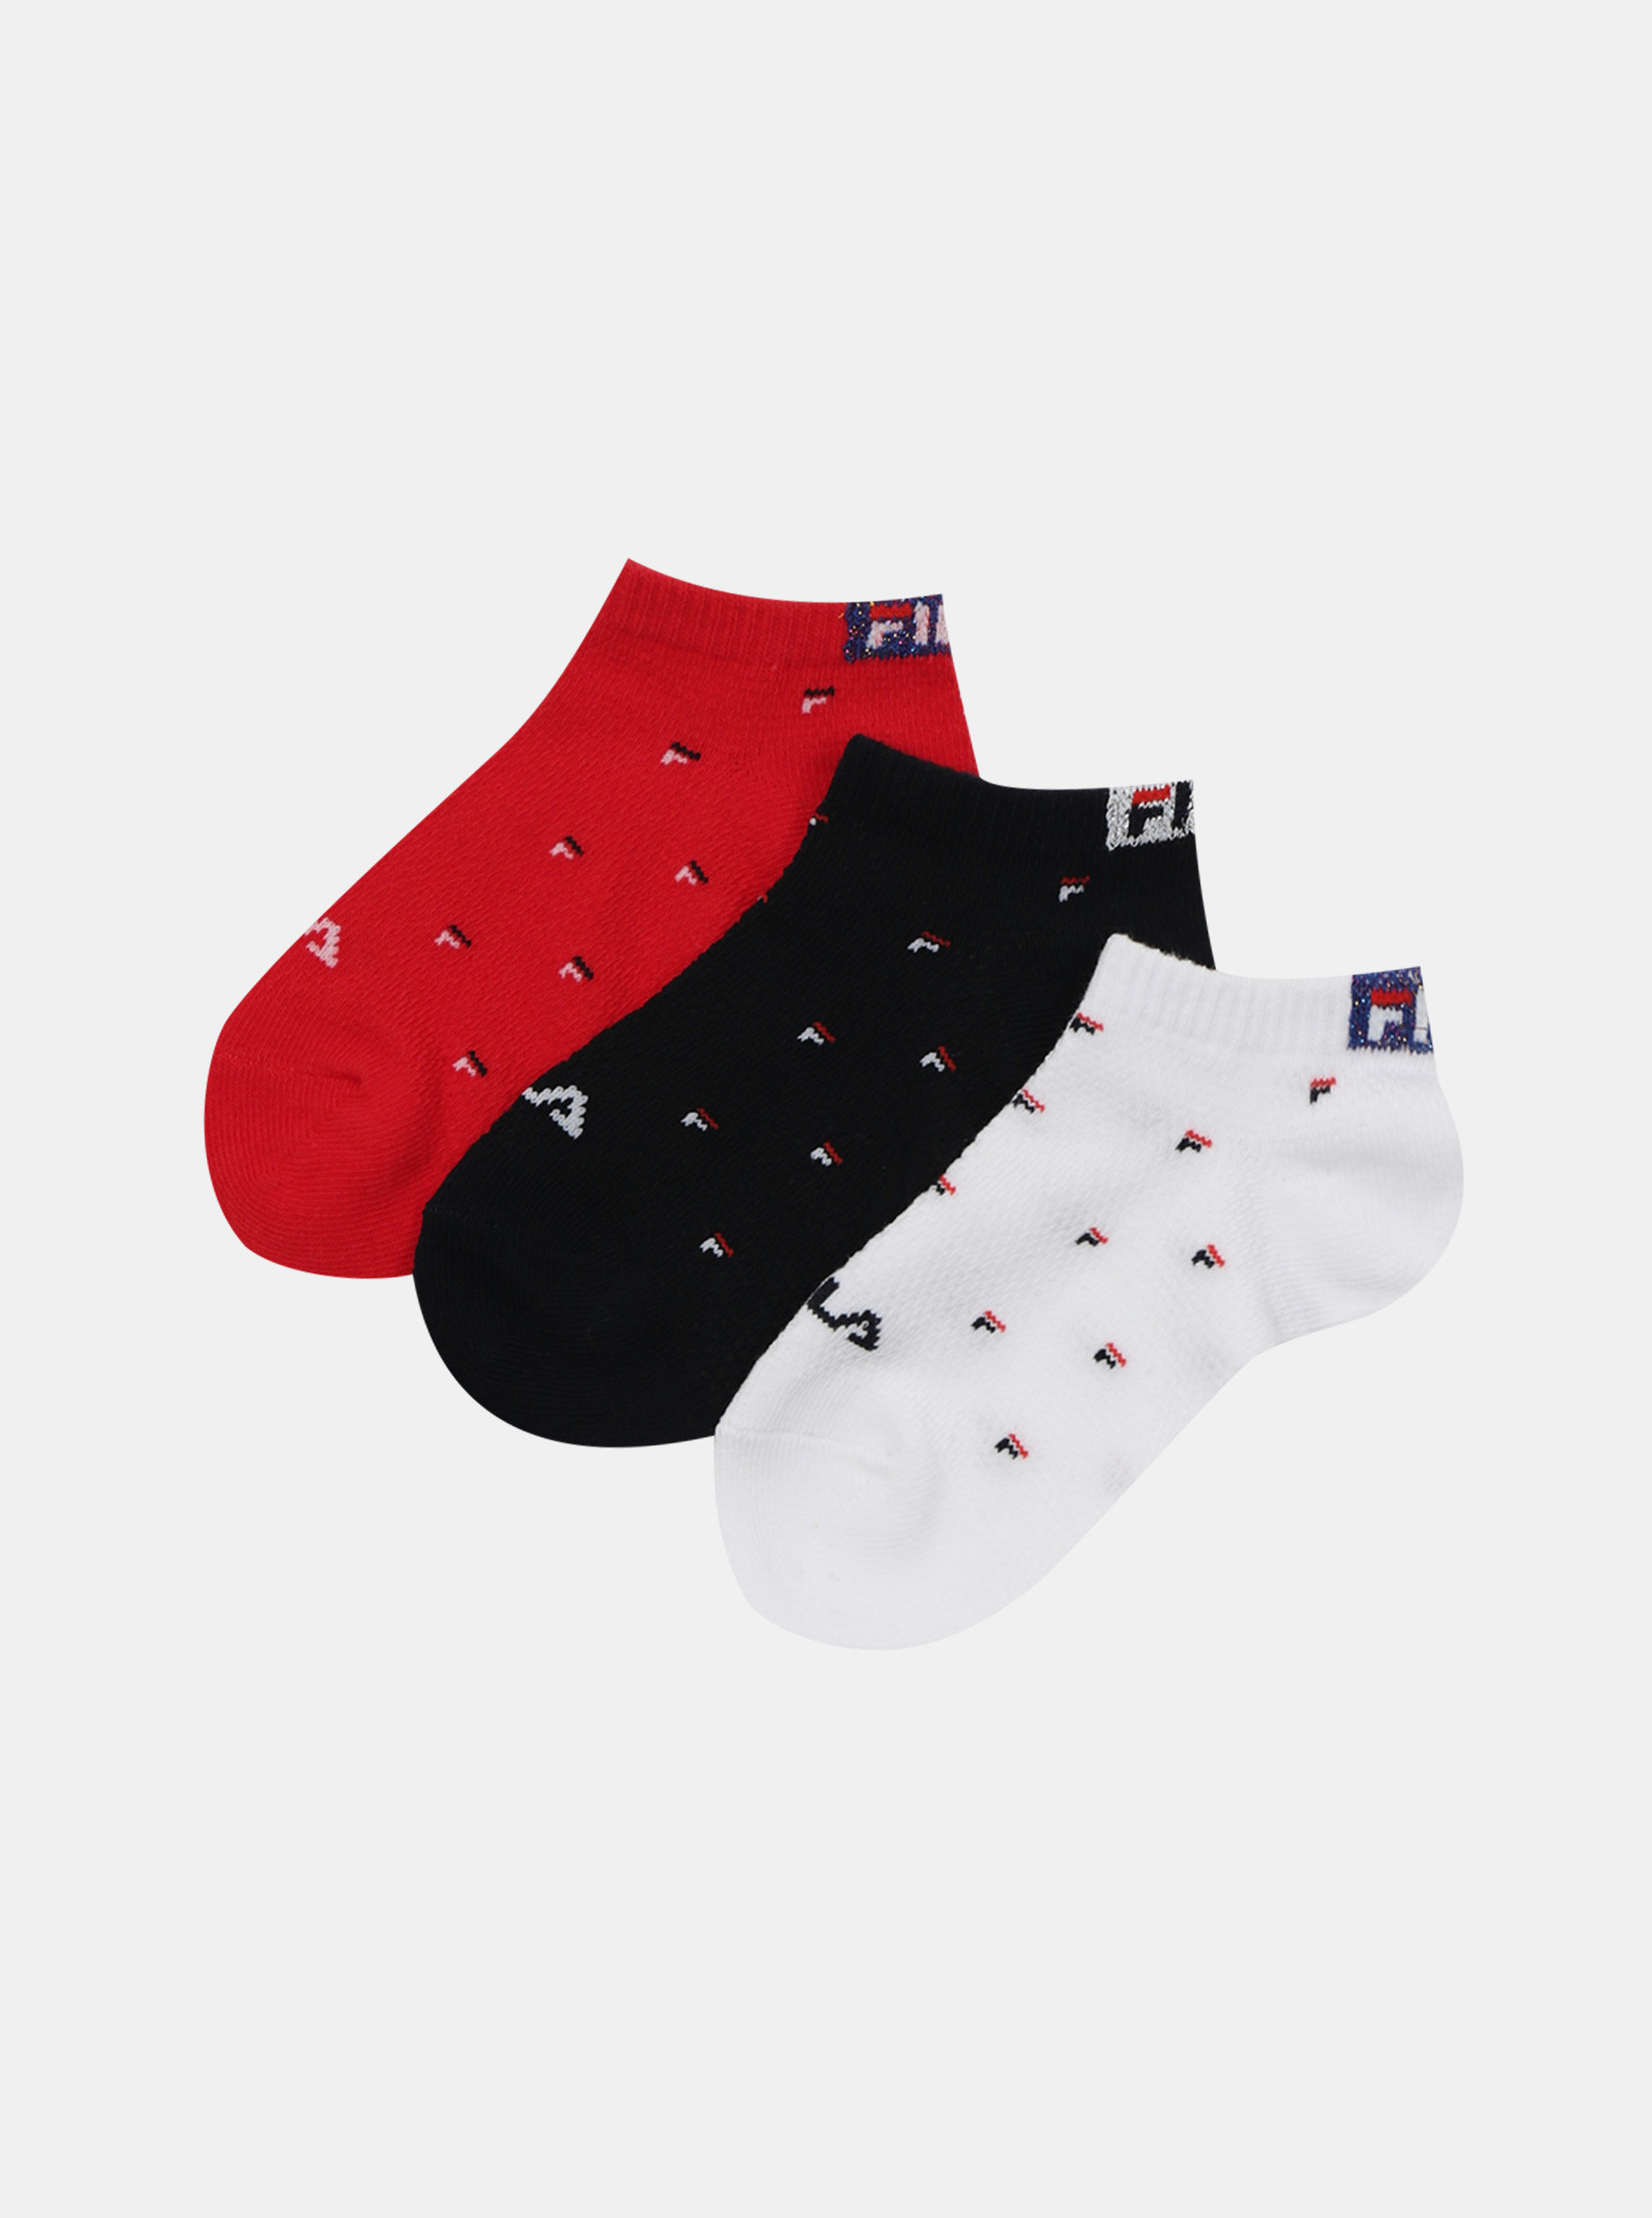 Fotografie Sada tří párů holčičích ponožek v červené a bílé barvě FILA